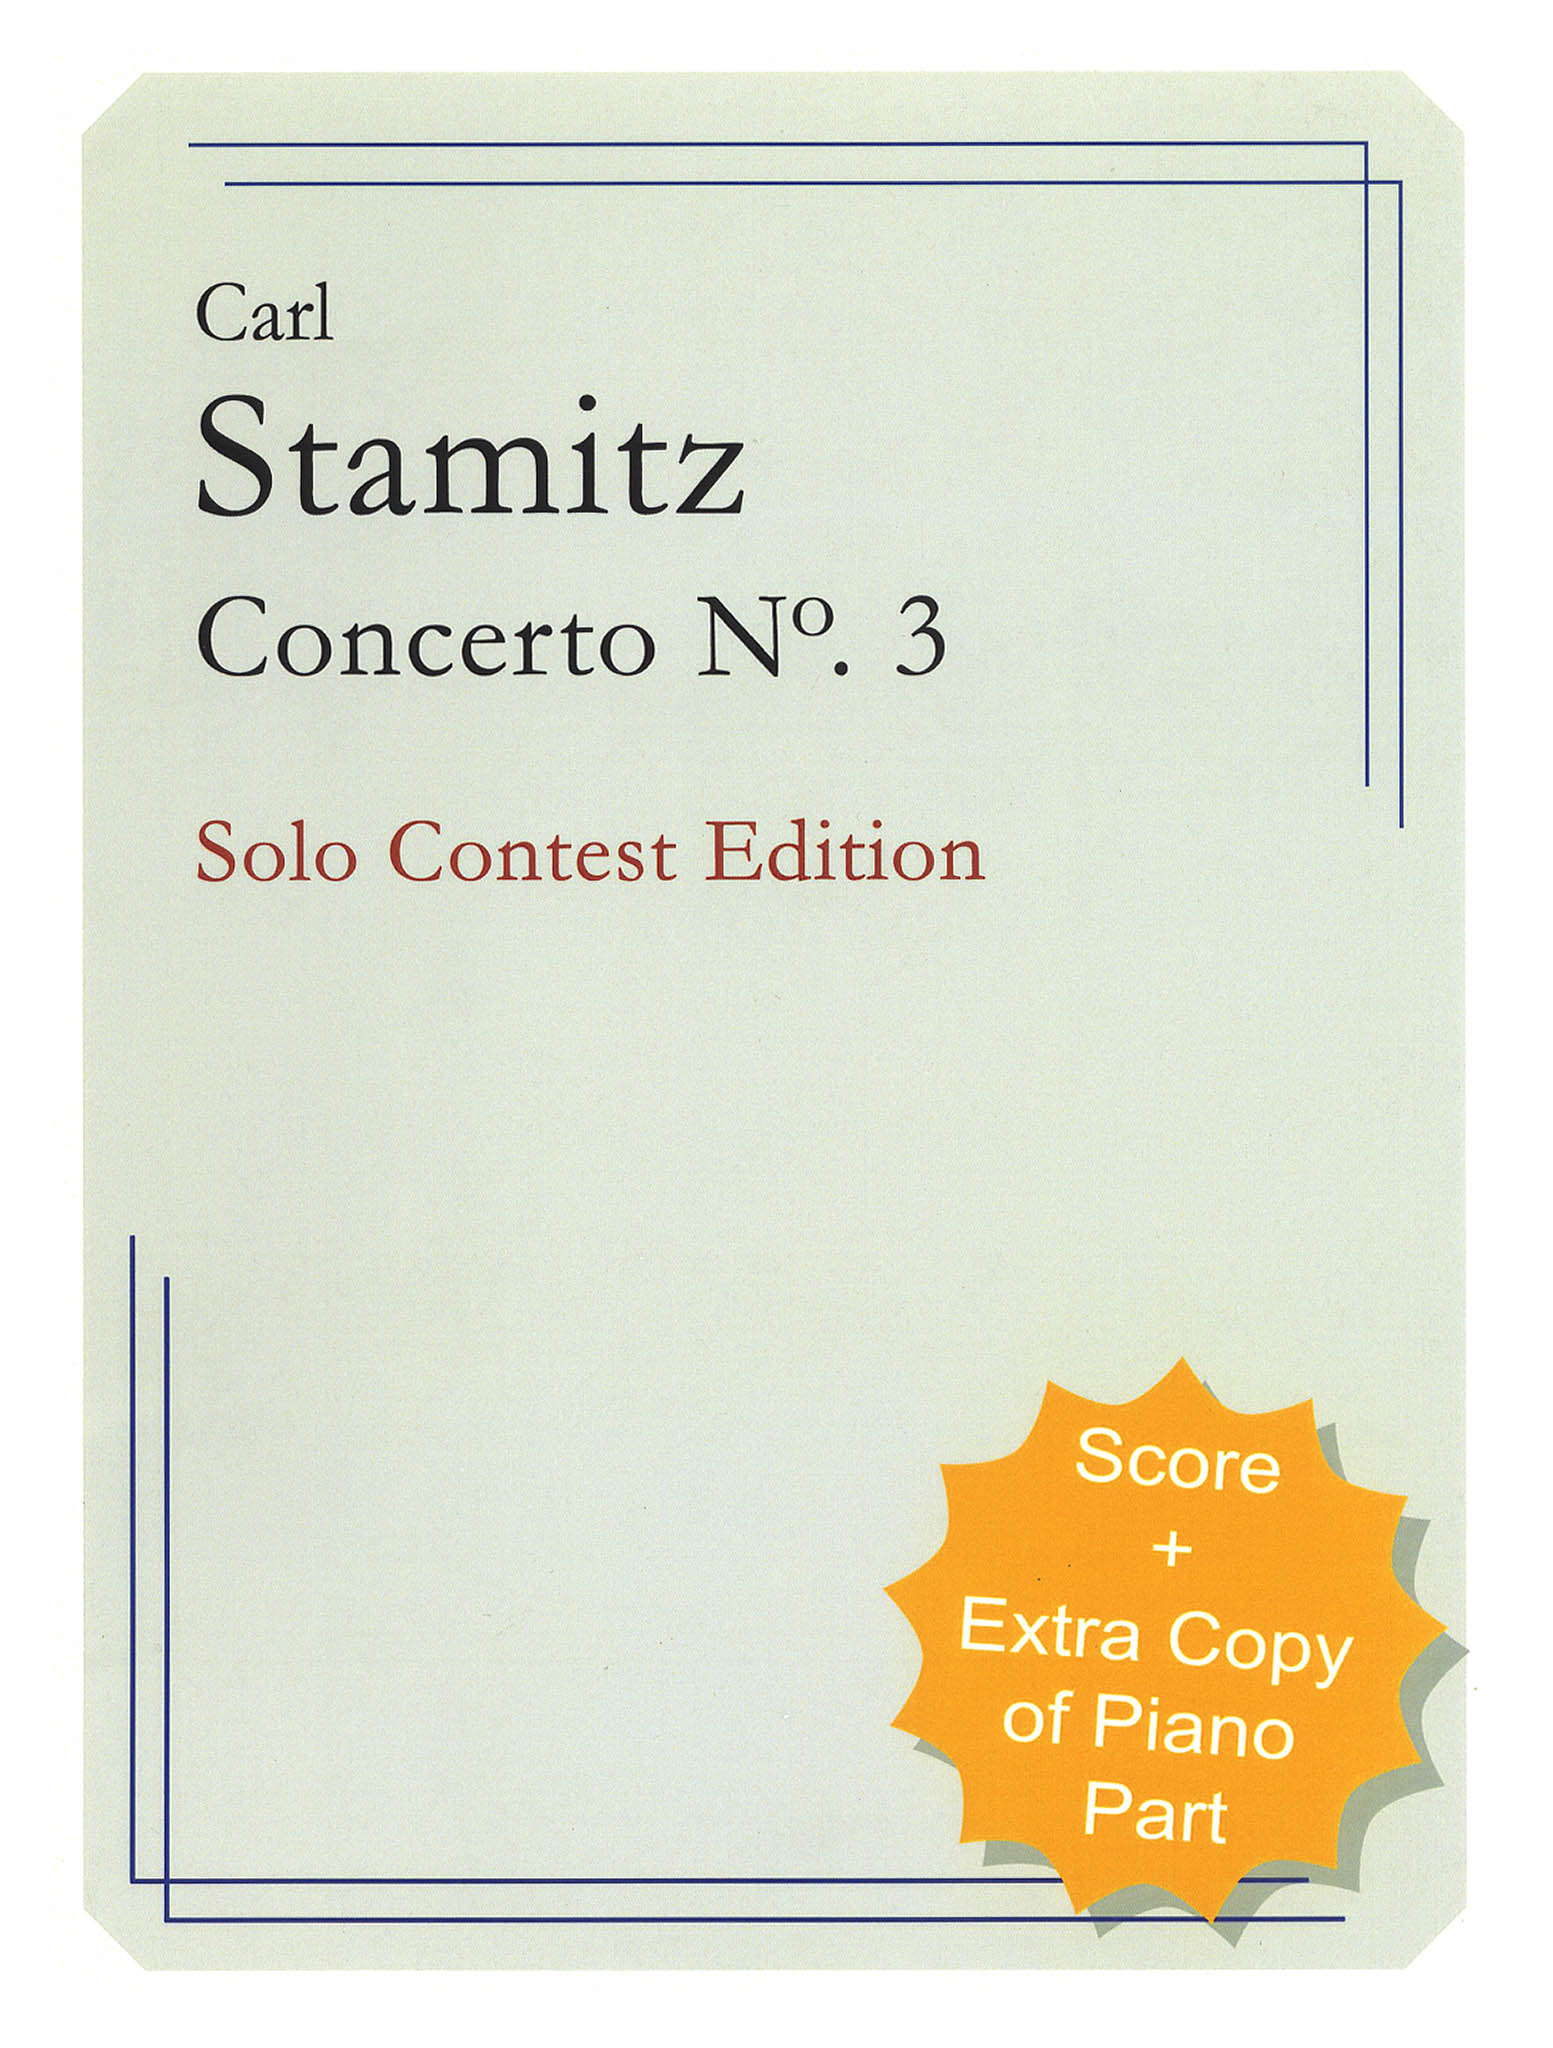 Stamitz Clarinet Concerto No. 3 Solo Contest Edition cover